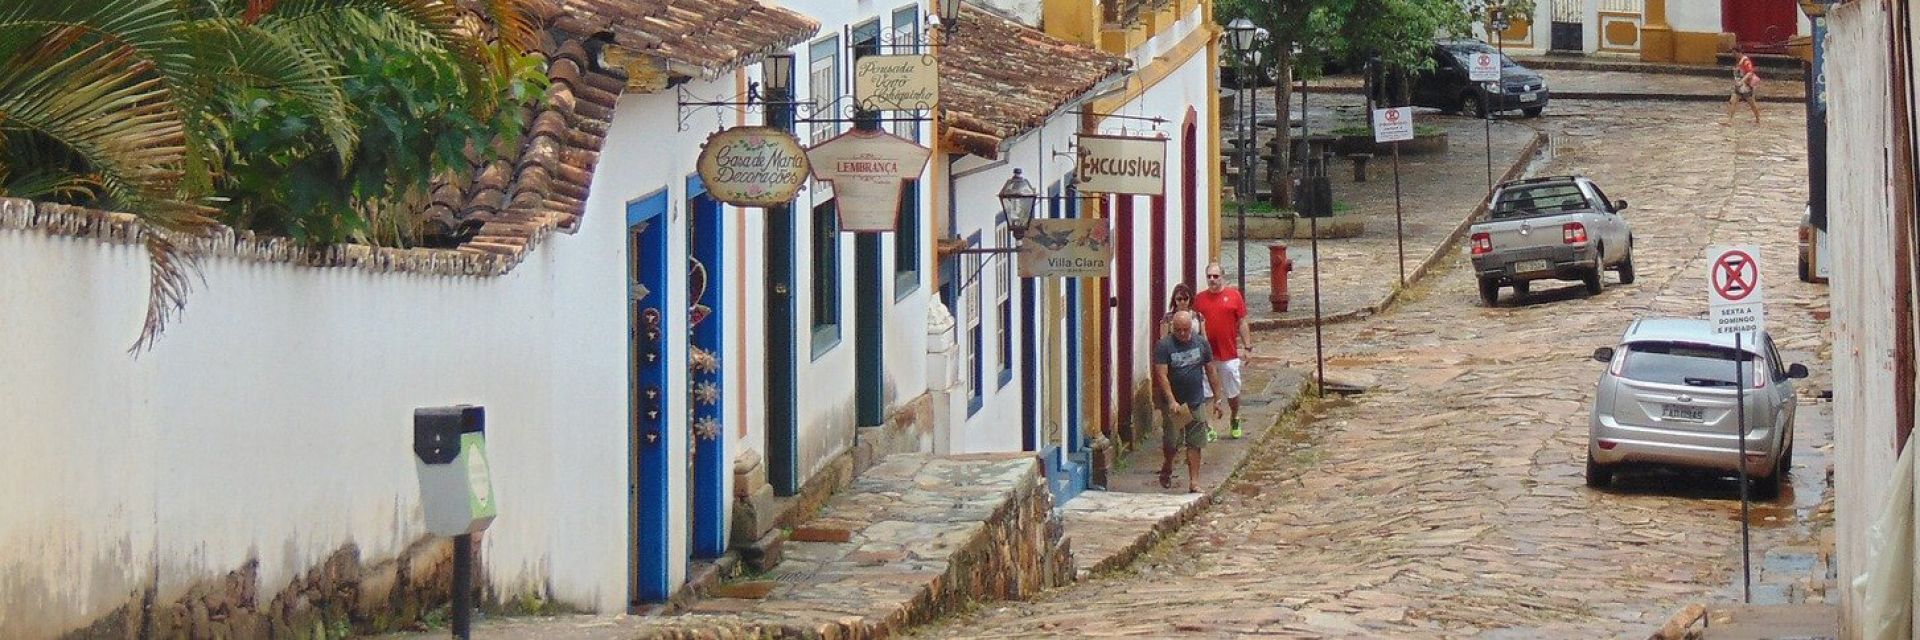 Descubra quais são as 15 principais cidades turísticas do Brasil